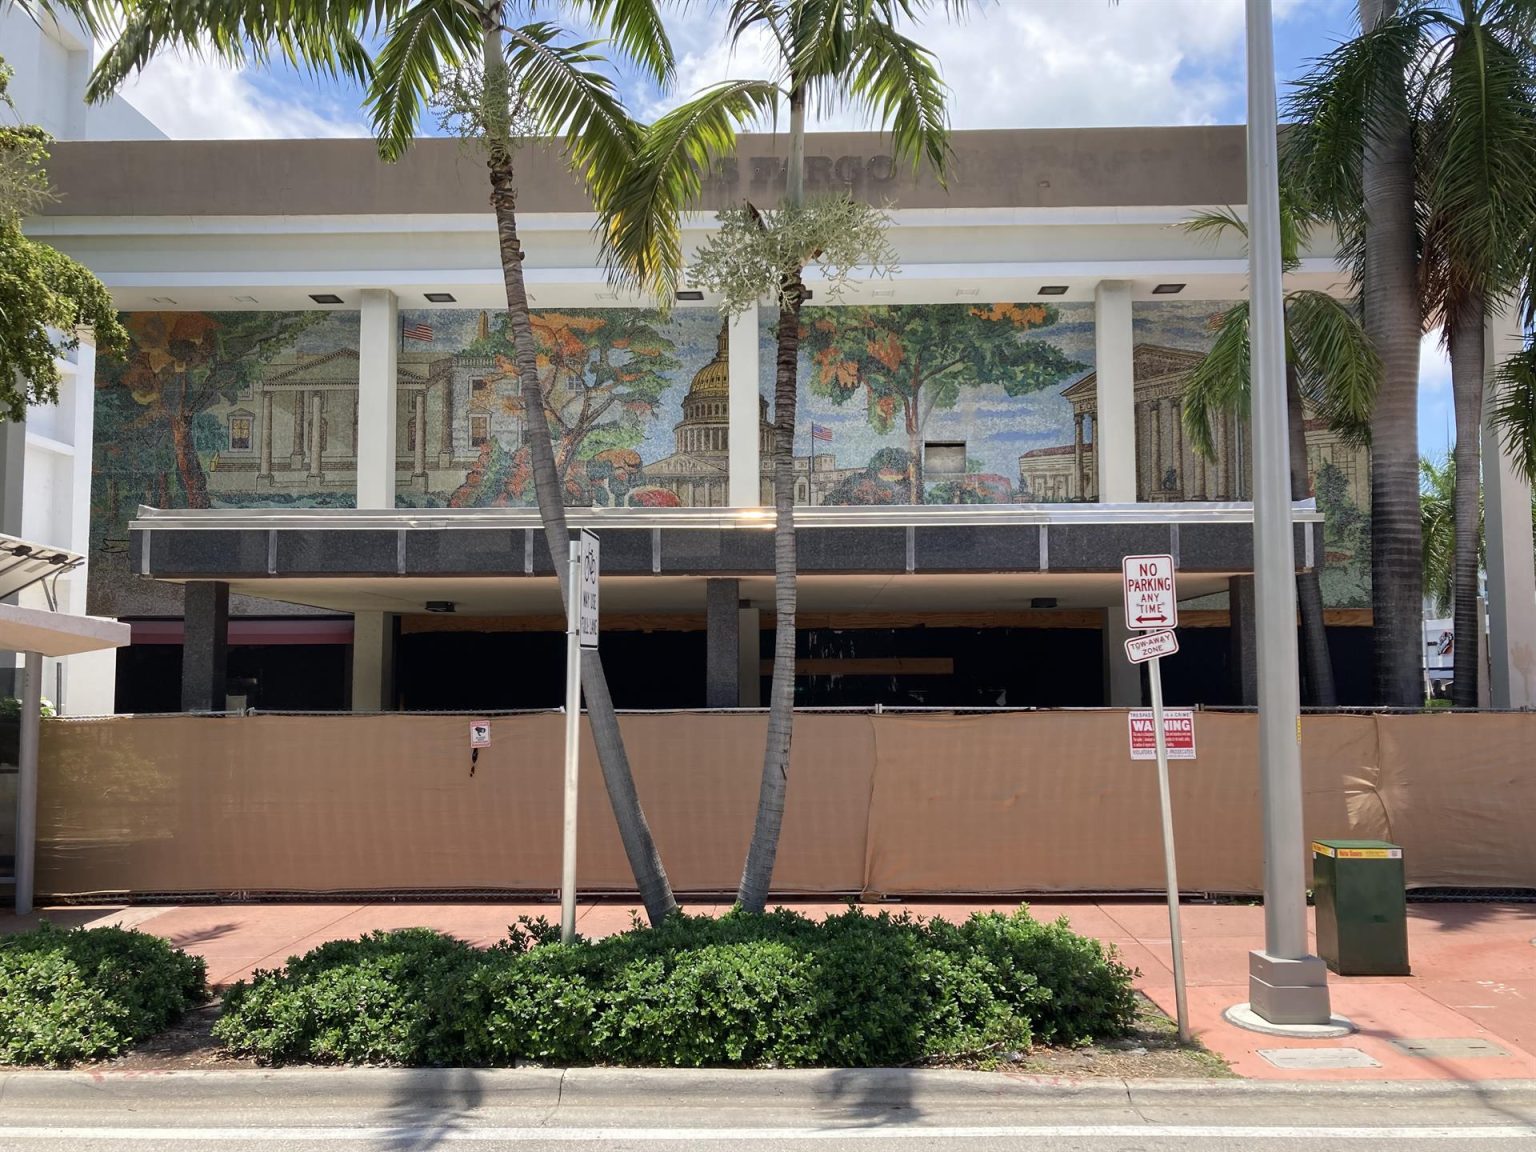 Fotografía donde se aprecian tres mosaicos dedicados a la Casa Blanca, el Capitolio y la Corte Suprema, realizados por el escultor Enzo Gallo en un antiguo edificio bancario que está siendo demolido para construir un hotel, en la esquina de Alton Road y Lincoln Road, el 17 de junio de 2022 en Miami Beach, Florida (EE. UU). EFE/Ivonne Malaver